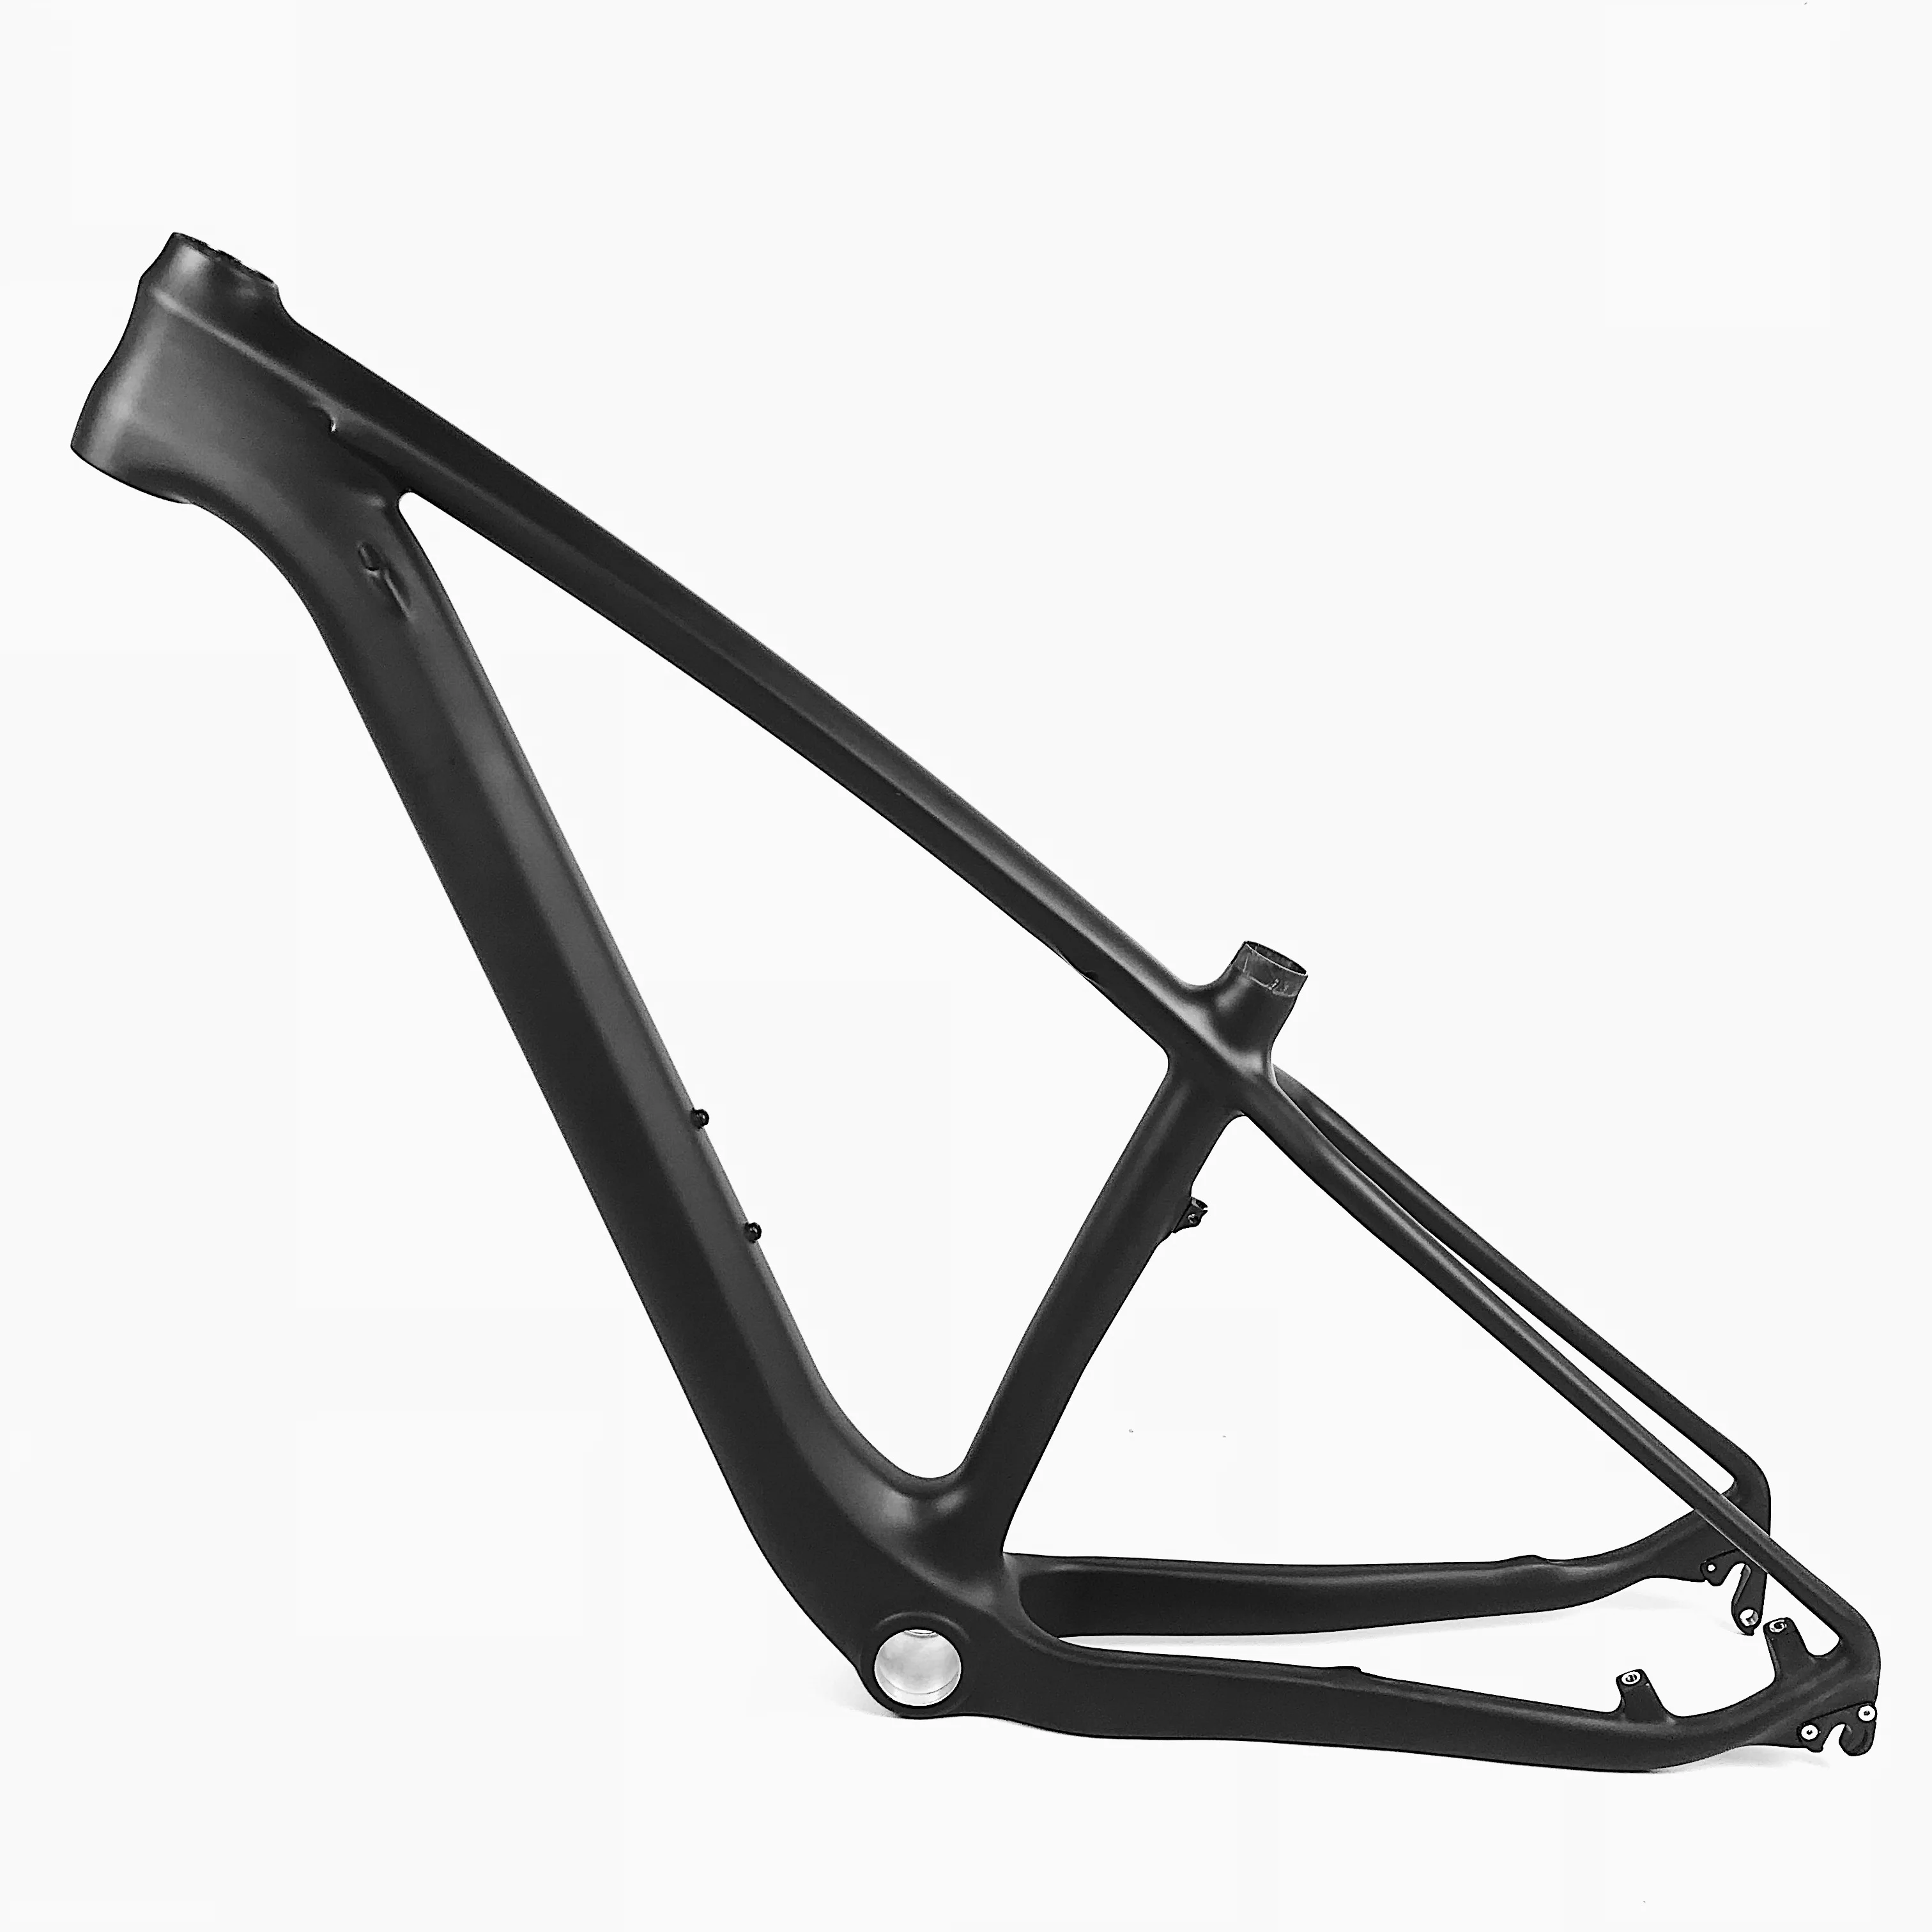 HONGFU 29er carbon frame/29 inch carbon fiber frame/29" carbon mountain bike frame From m.alibaba.com